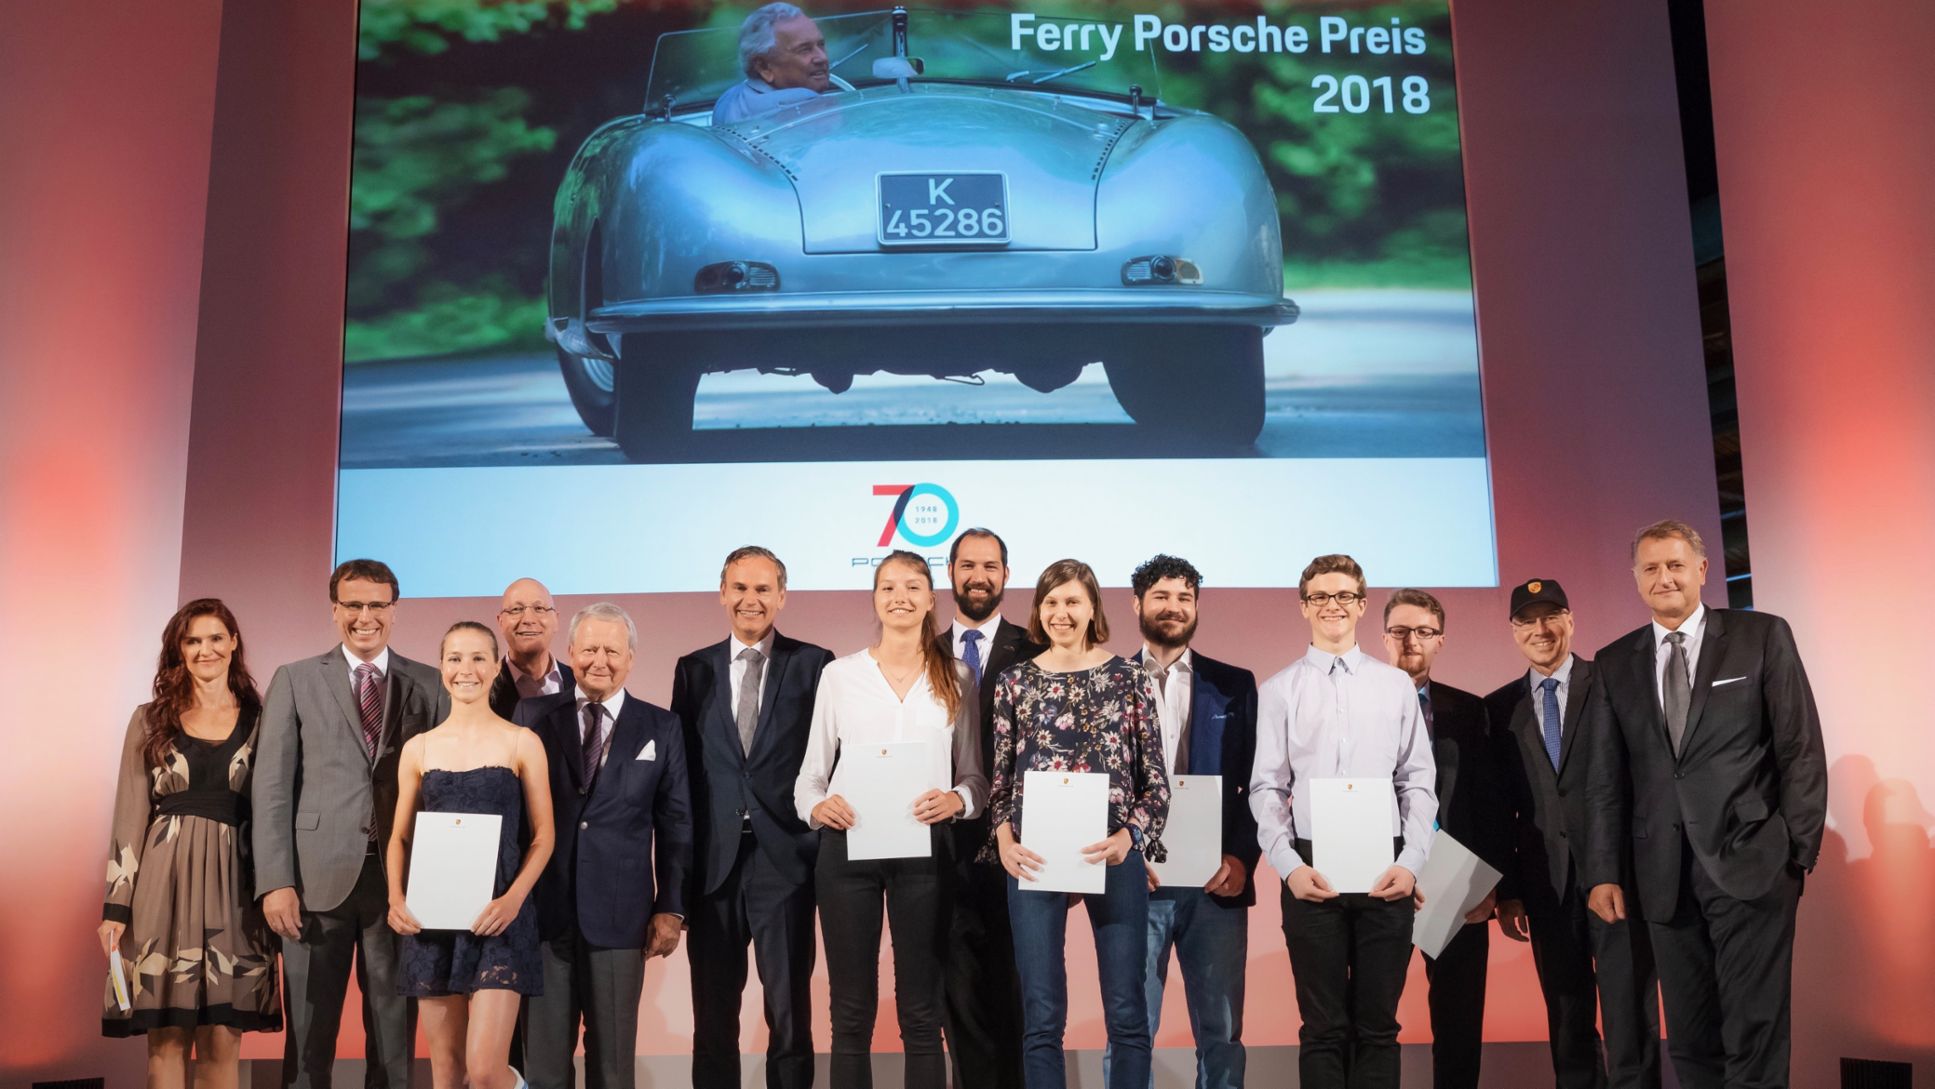 Ferry-Porsche-Preisträger 2018